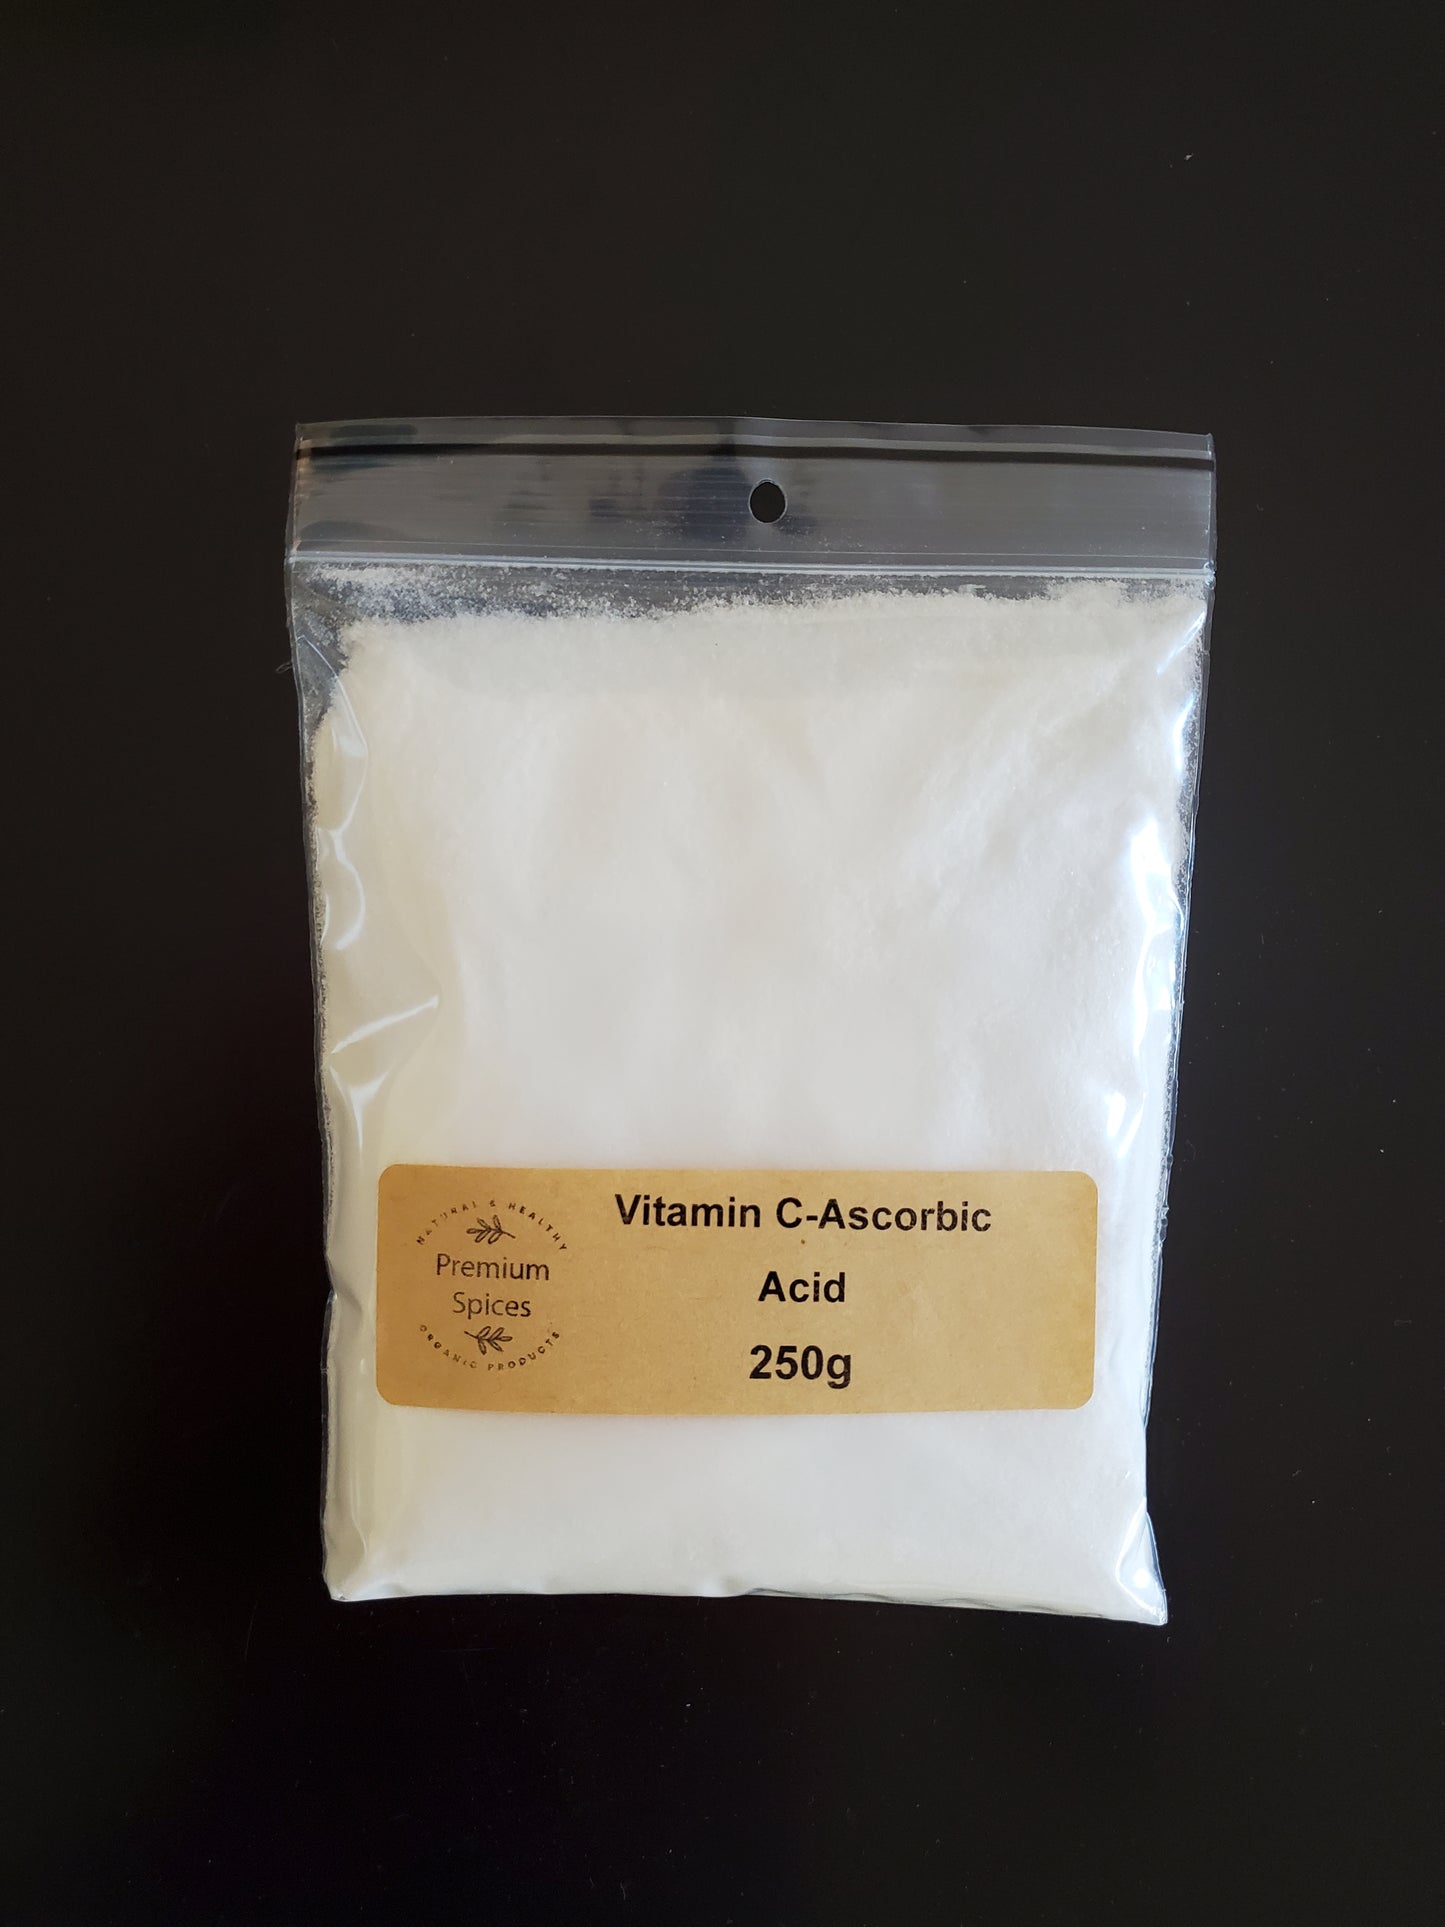 Premium Vitamin C - Ascorbic Acid